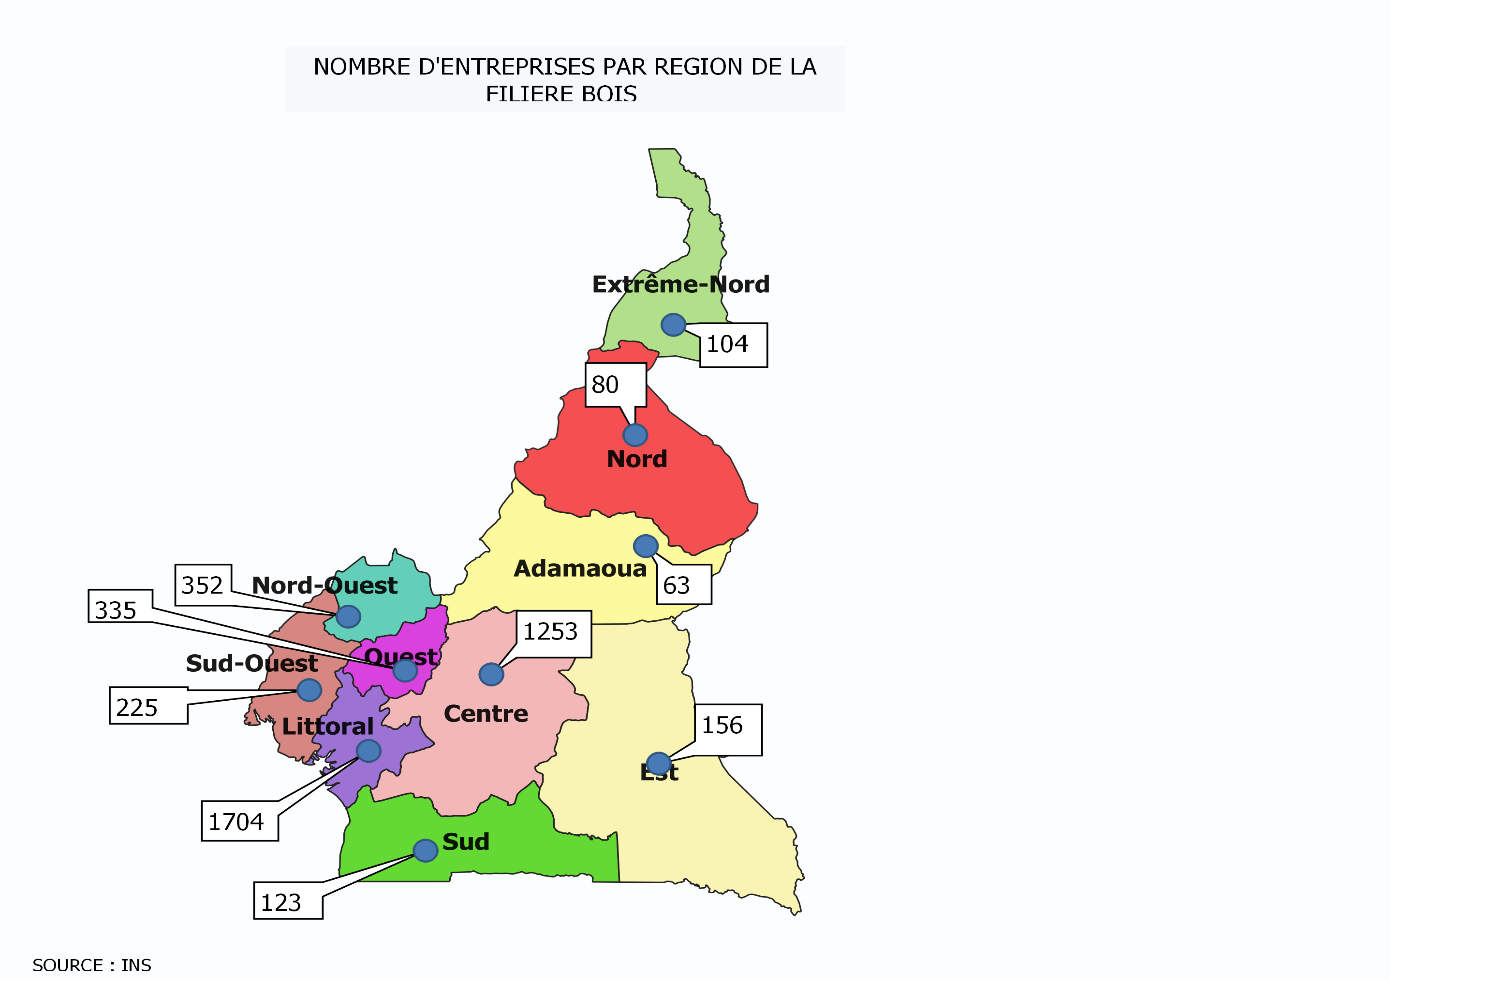 Filière bois :  Au Cameroun, 2 entreprises sur 4 000 sont à capitaux publics